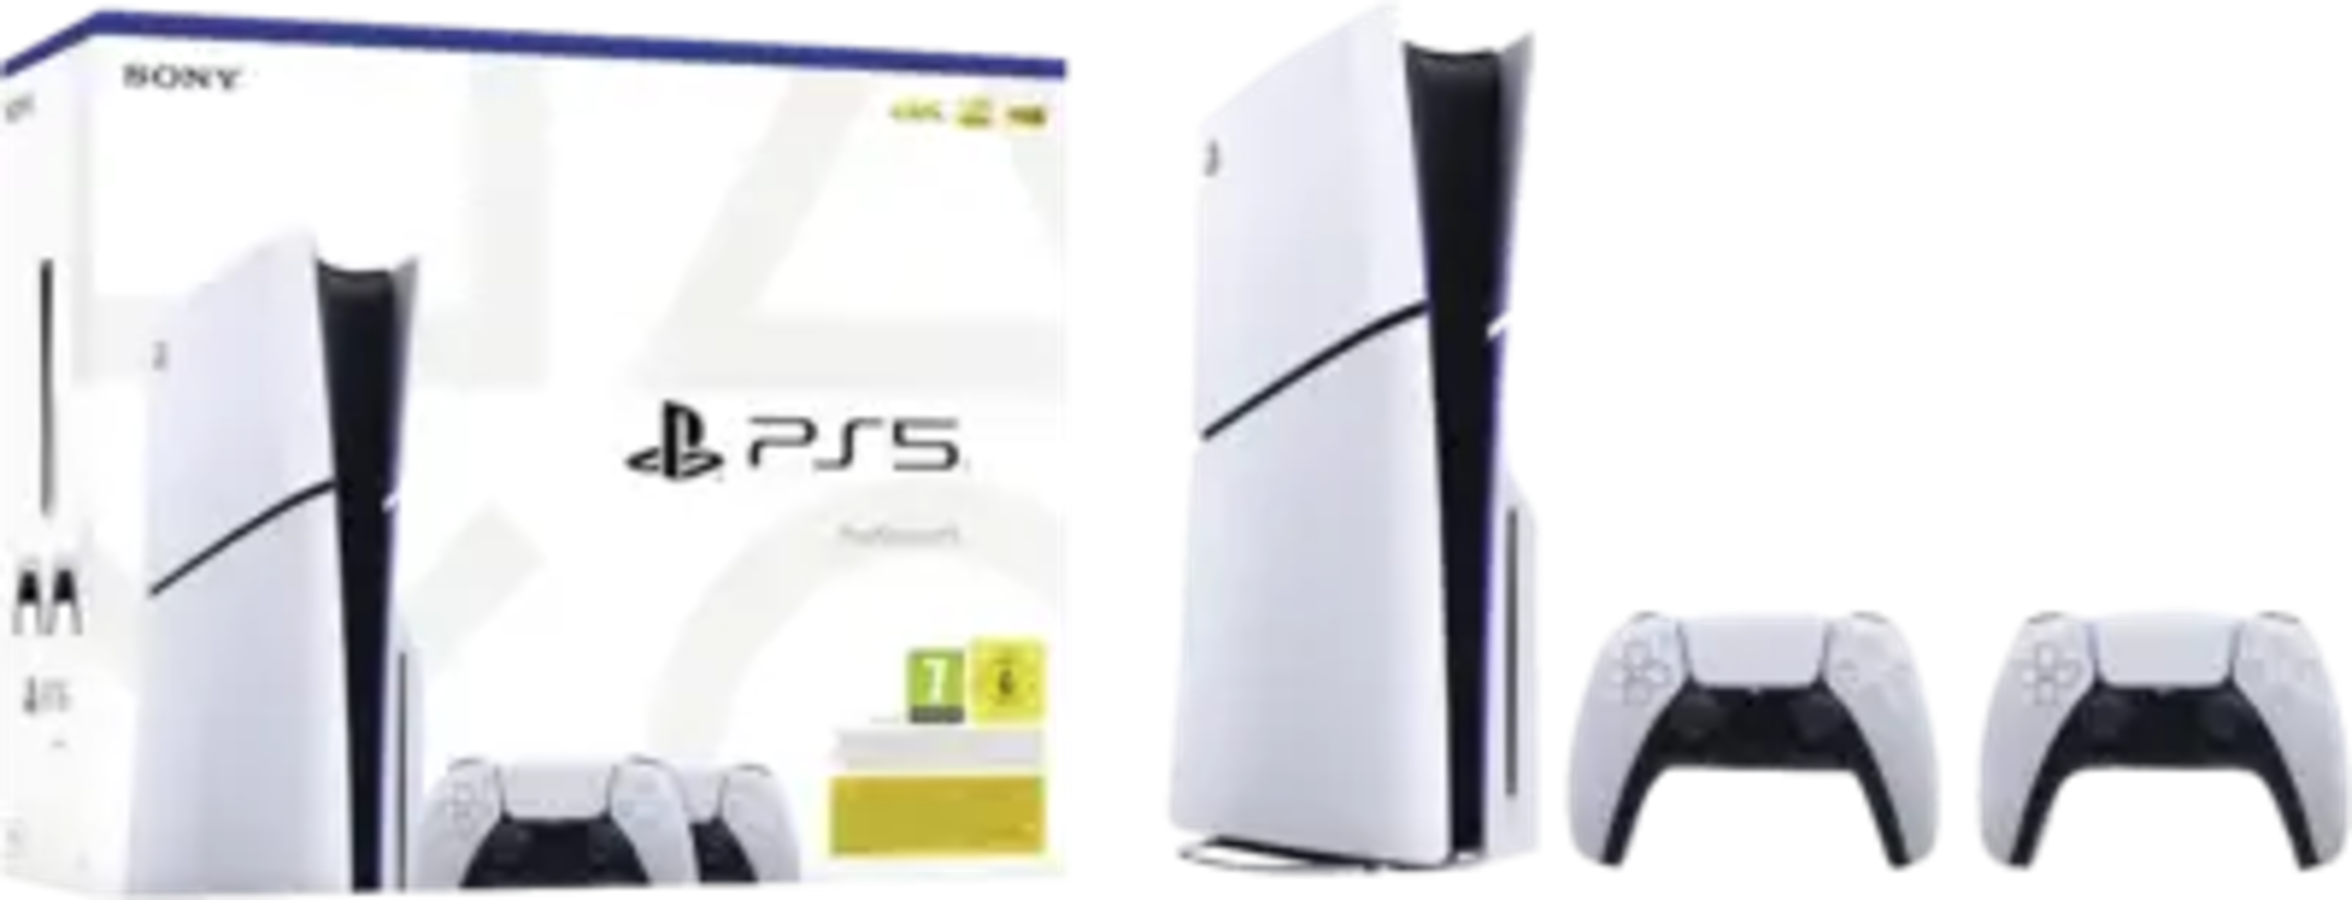 Sony_Sony Playstation 5 (PS5)_0.webp